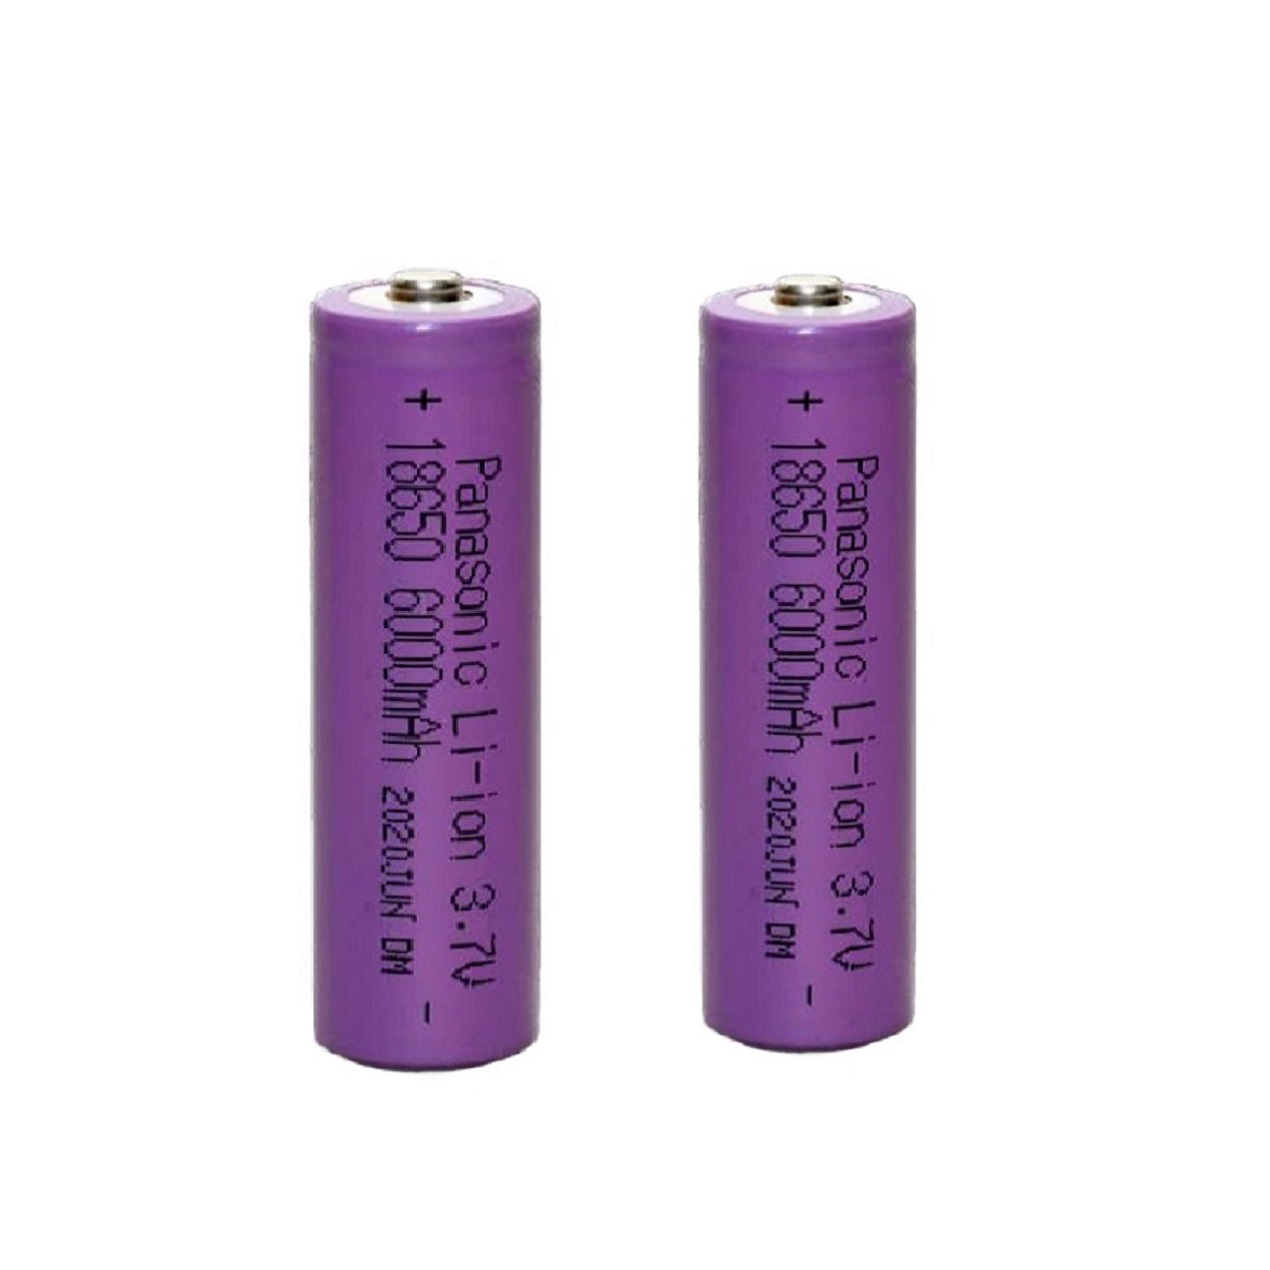  باتری لیتیوم یون قابل شارژ پاناسونیک کد 18650 ظرفیت 6000 میلی آمپرساعت بسته 2 عددی